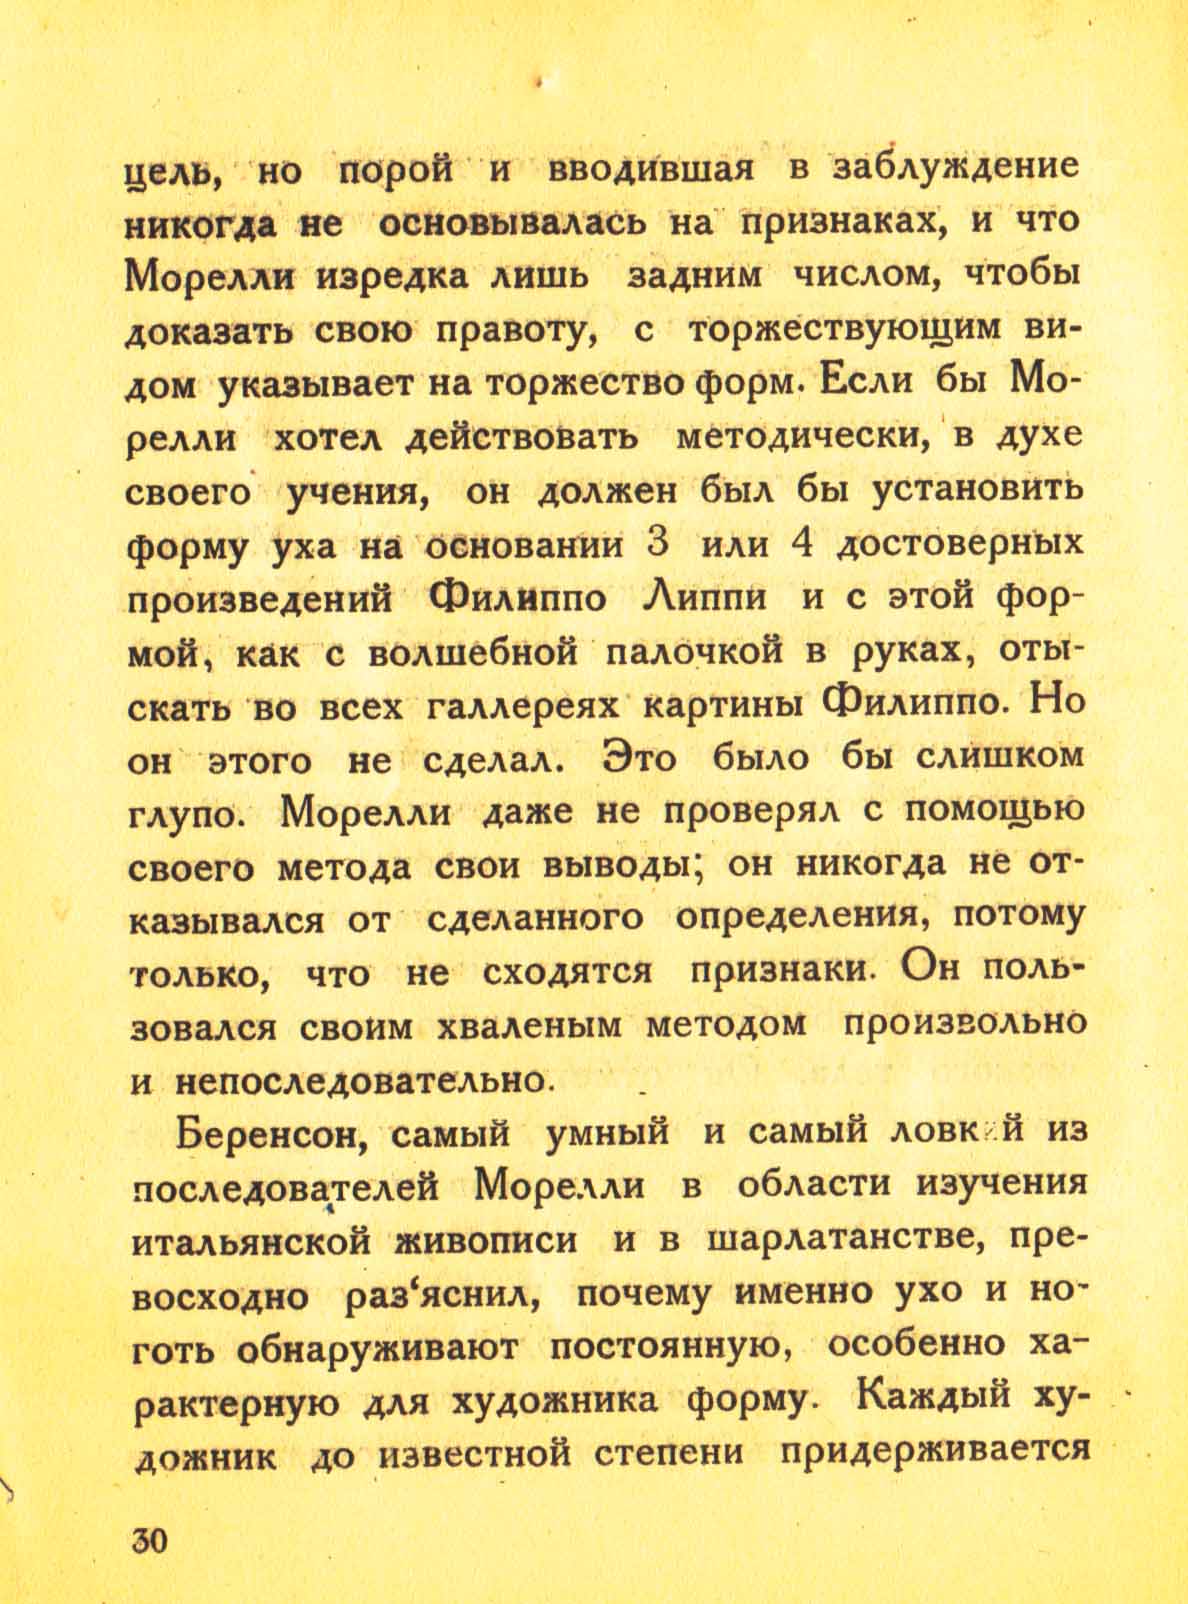 Знаток искусства / М. Фридлендер ; перевод В. Блоха ; под ред. Б. Виппера. — Москва : Дельфин, 1923